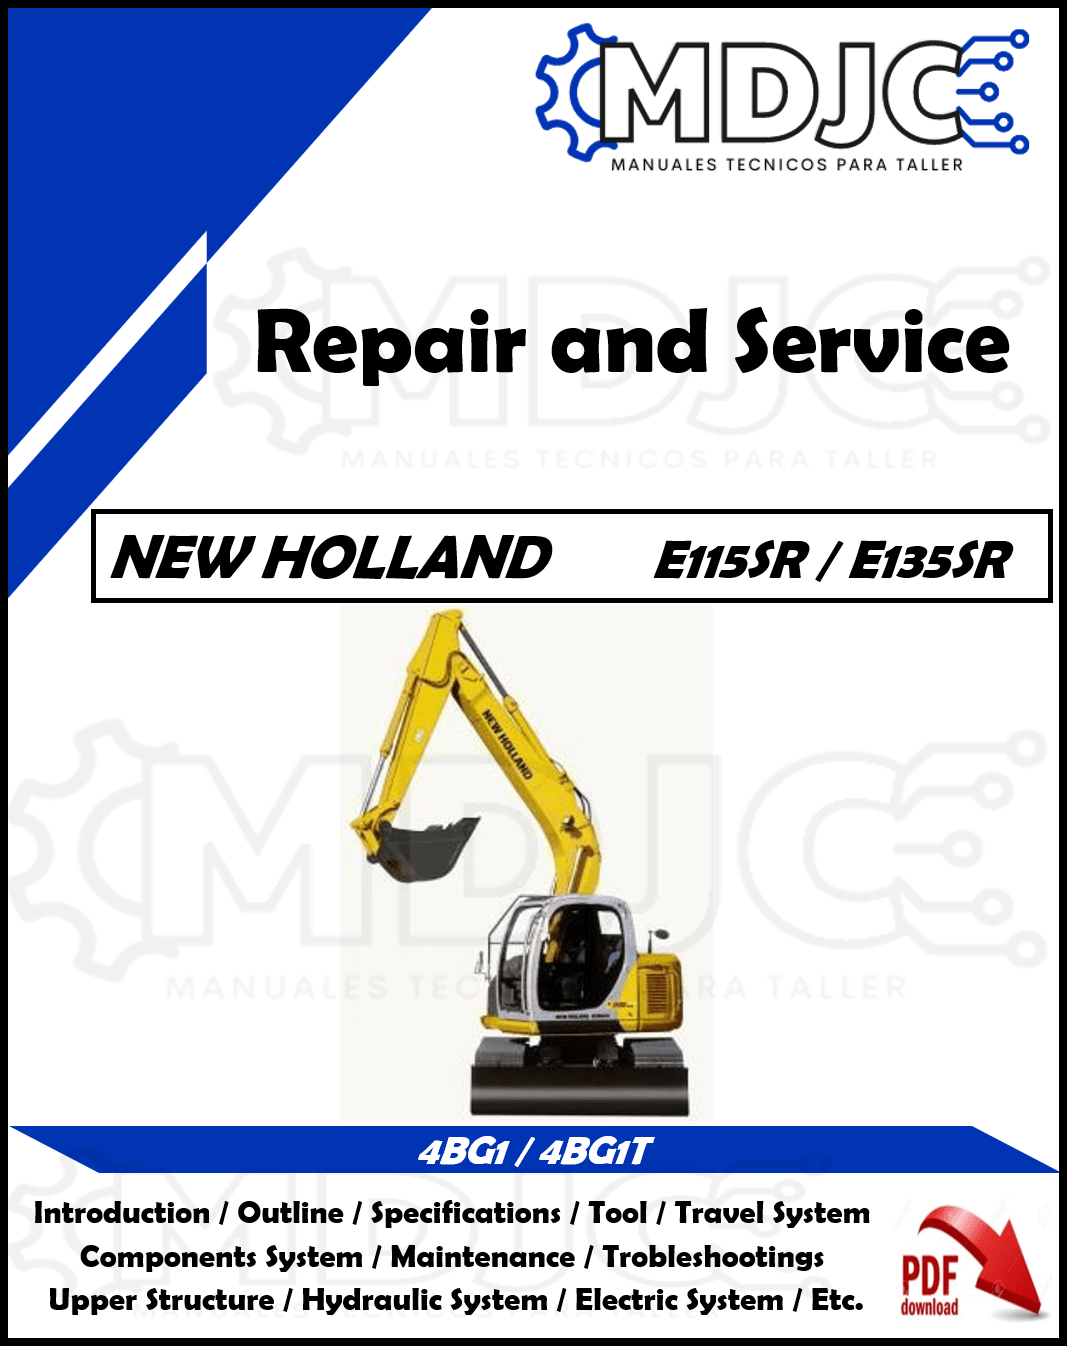 Manual de Taller (Reparación y Servicio) New Holland E115SR / E135SR